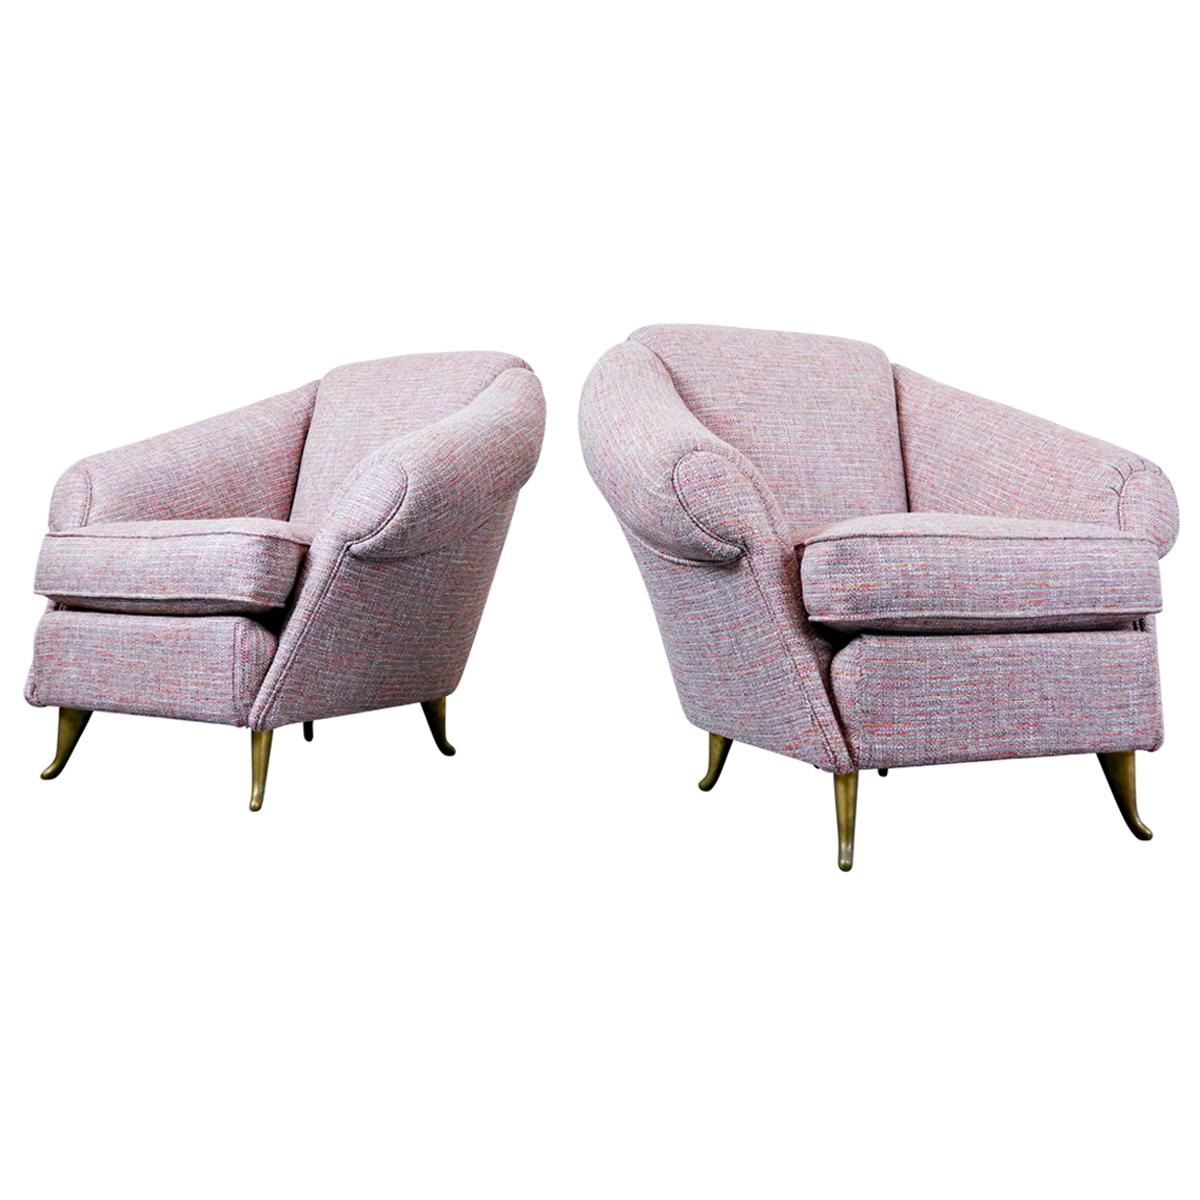 Paire de fauteuils italiens rose clair de style mi-siècle moderne, années 1950, neufs tissu d'ameublement